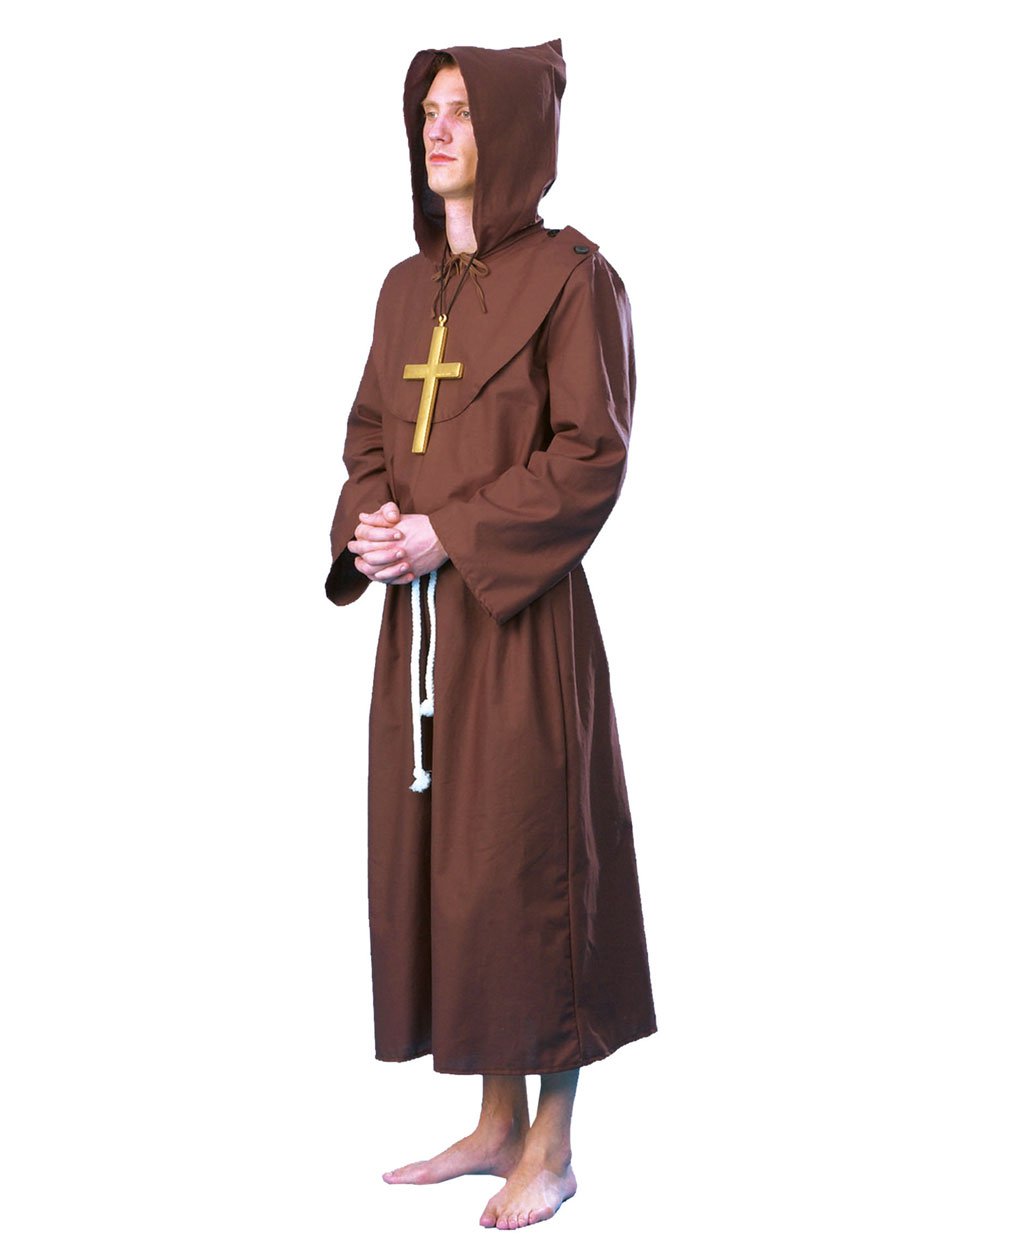 Kostüm Herren Herrenkostüm Mönch Priester Klosterbruder Mönchskutte L022 